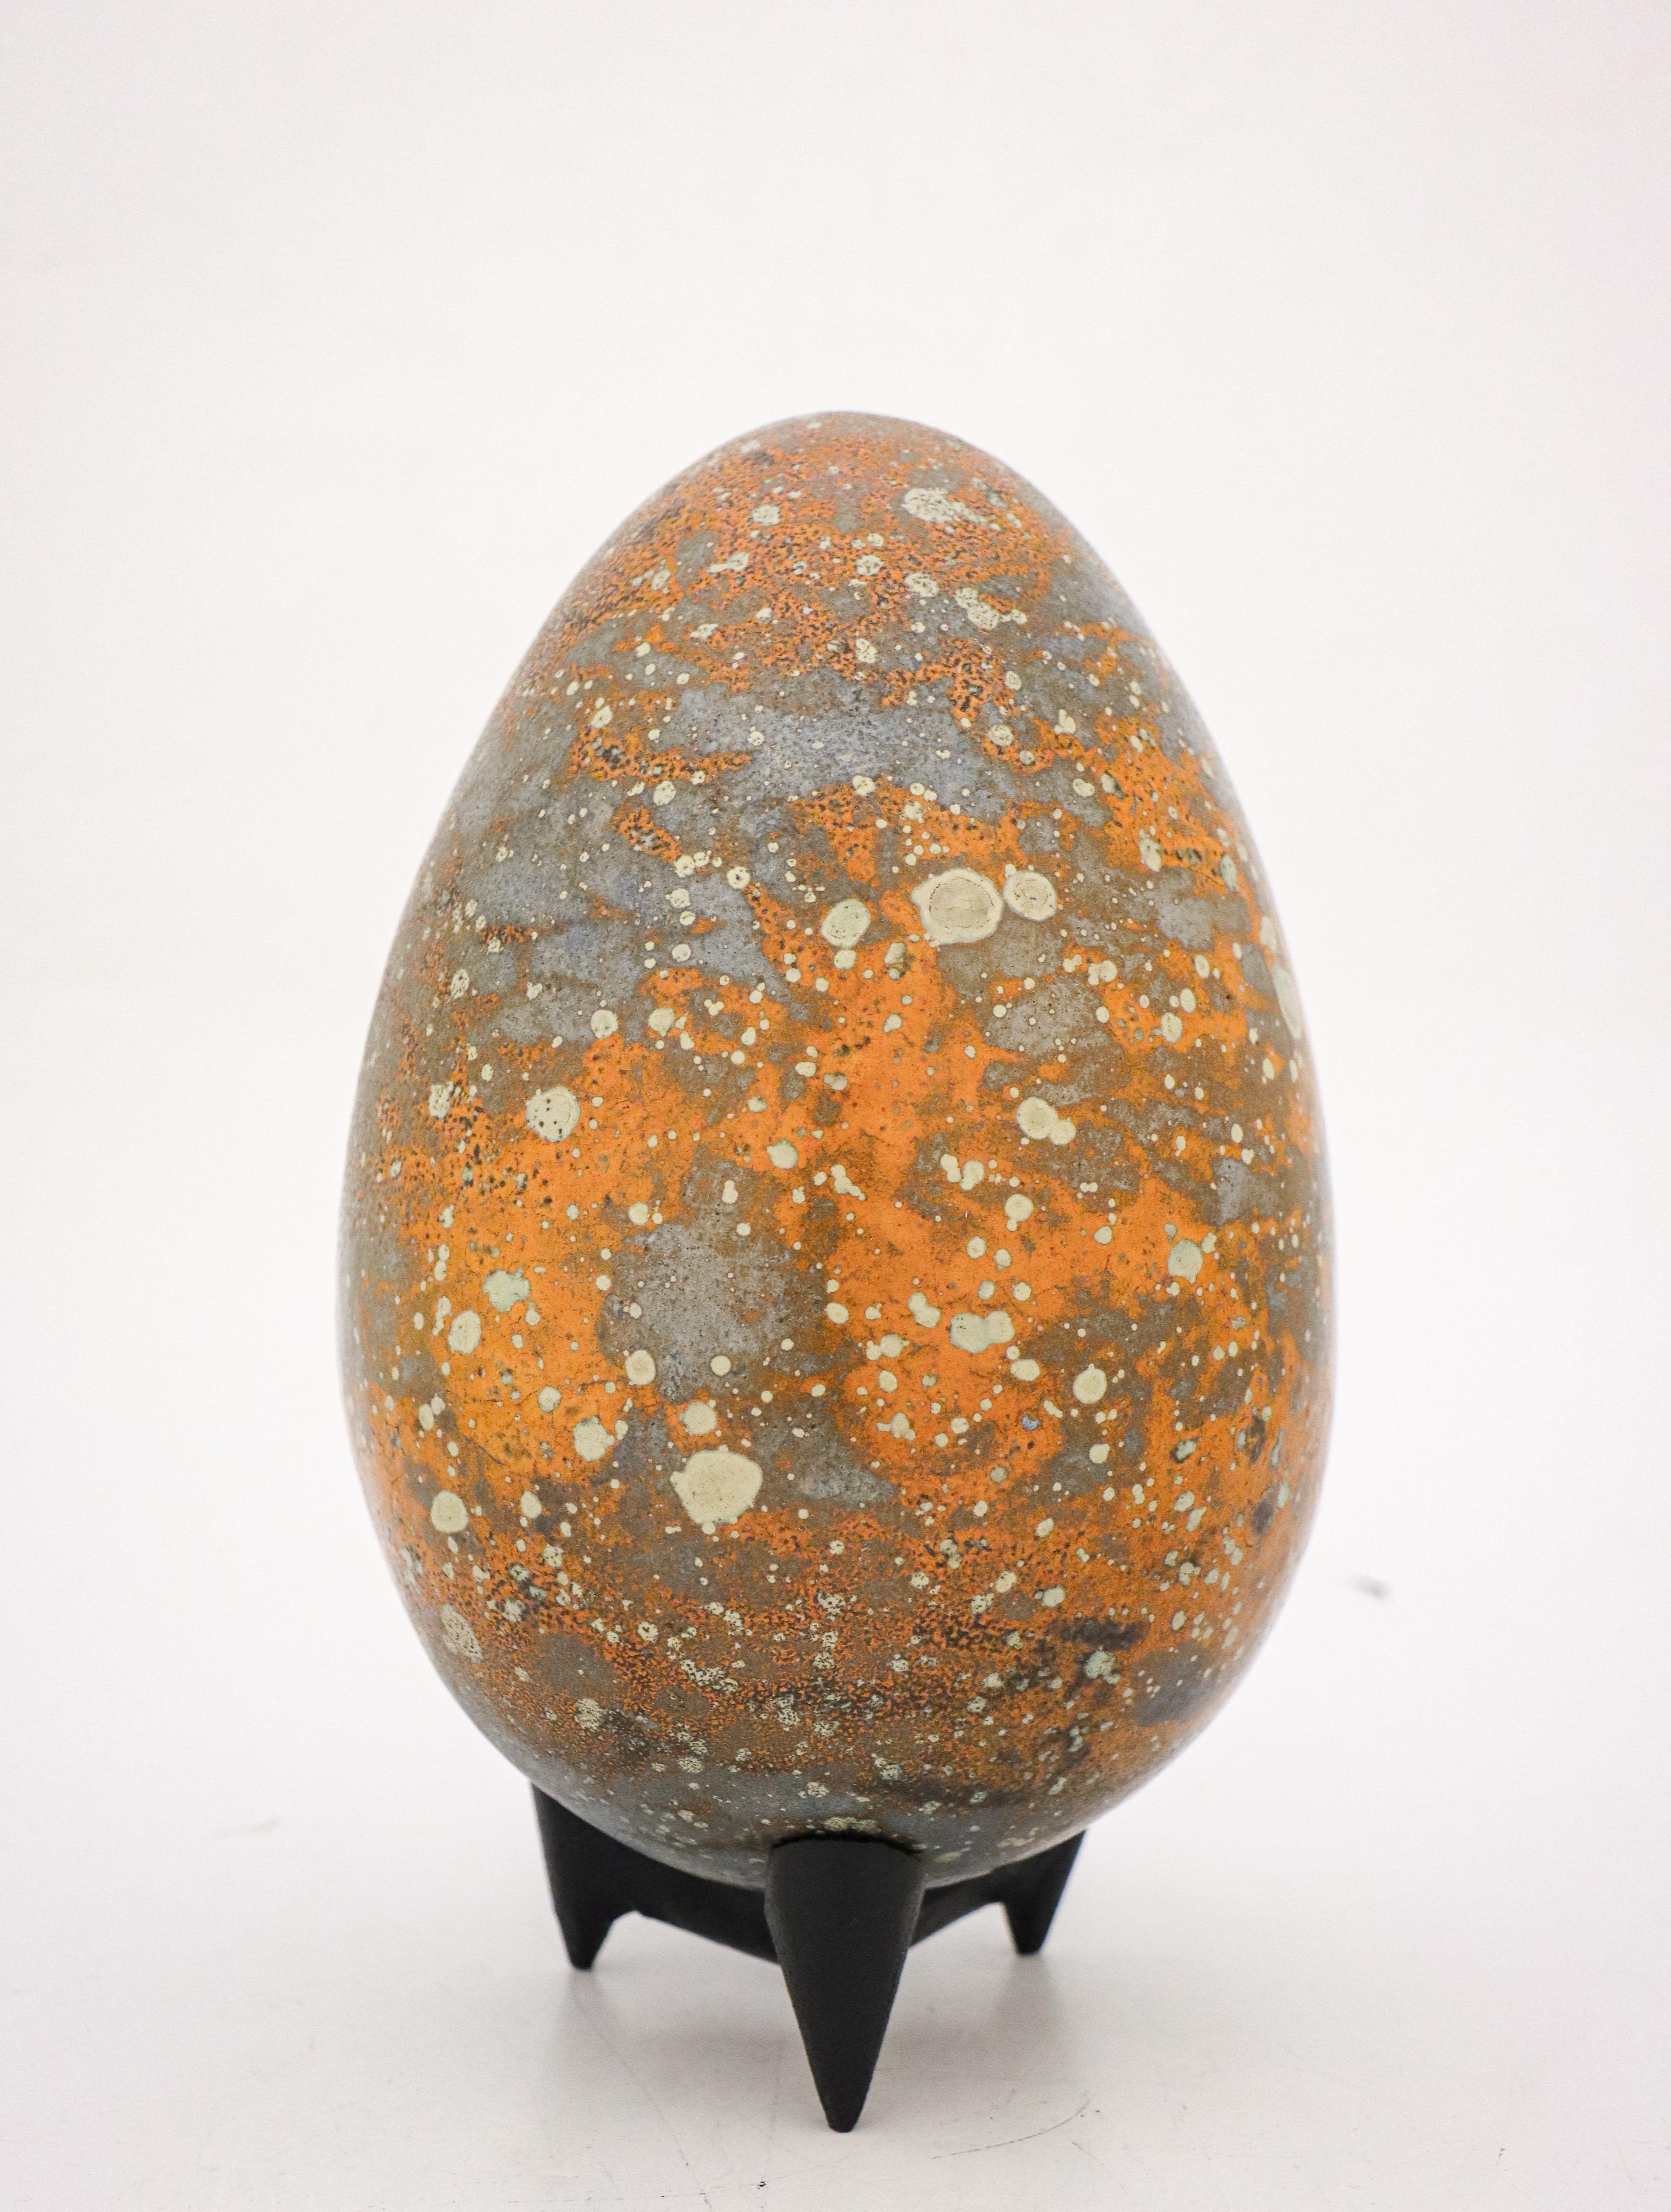 Das Ei wurde von dem schwedischen Keramiker Hans Hedberg entworfen, der in Biot, Frankreich, lebte und arbeitete. Dieses Ei ist 24,5 cm (9,8